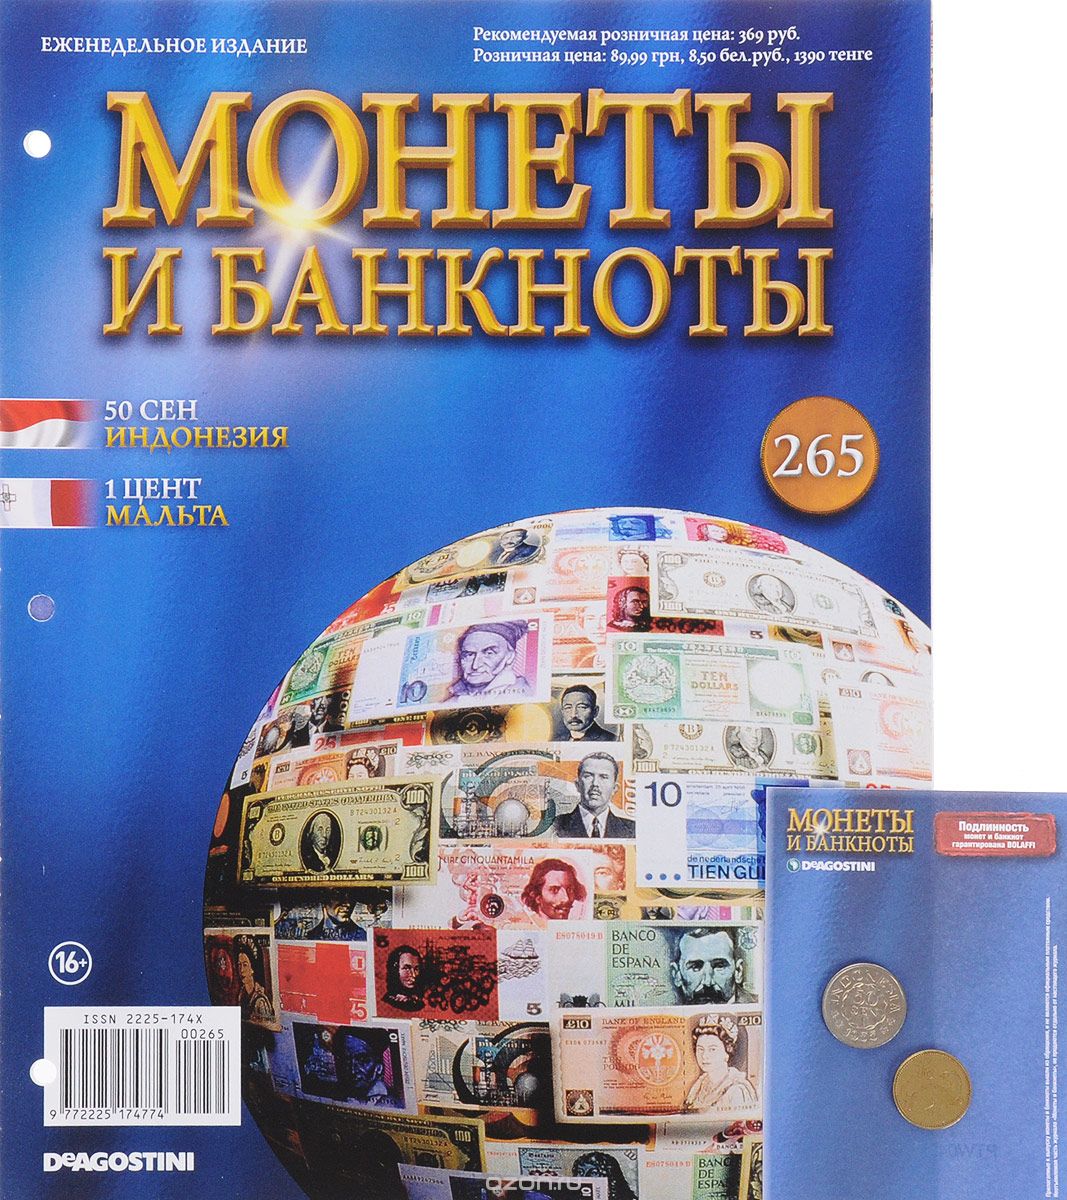 Скачать книгу "Журнал "Монеты и банкноты" №265"